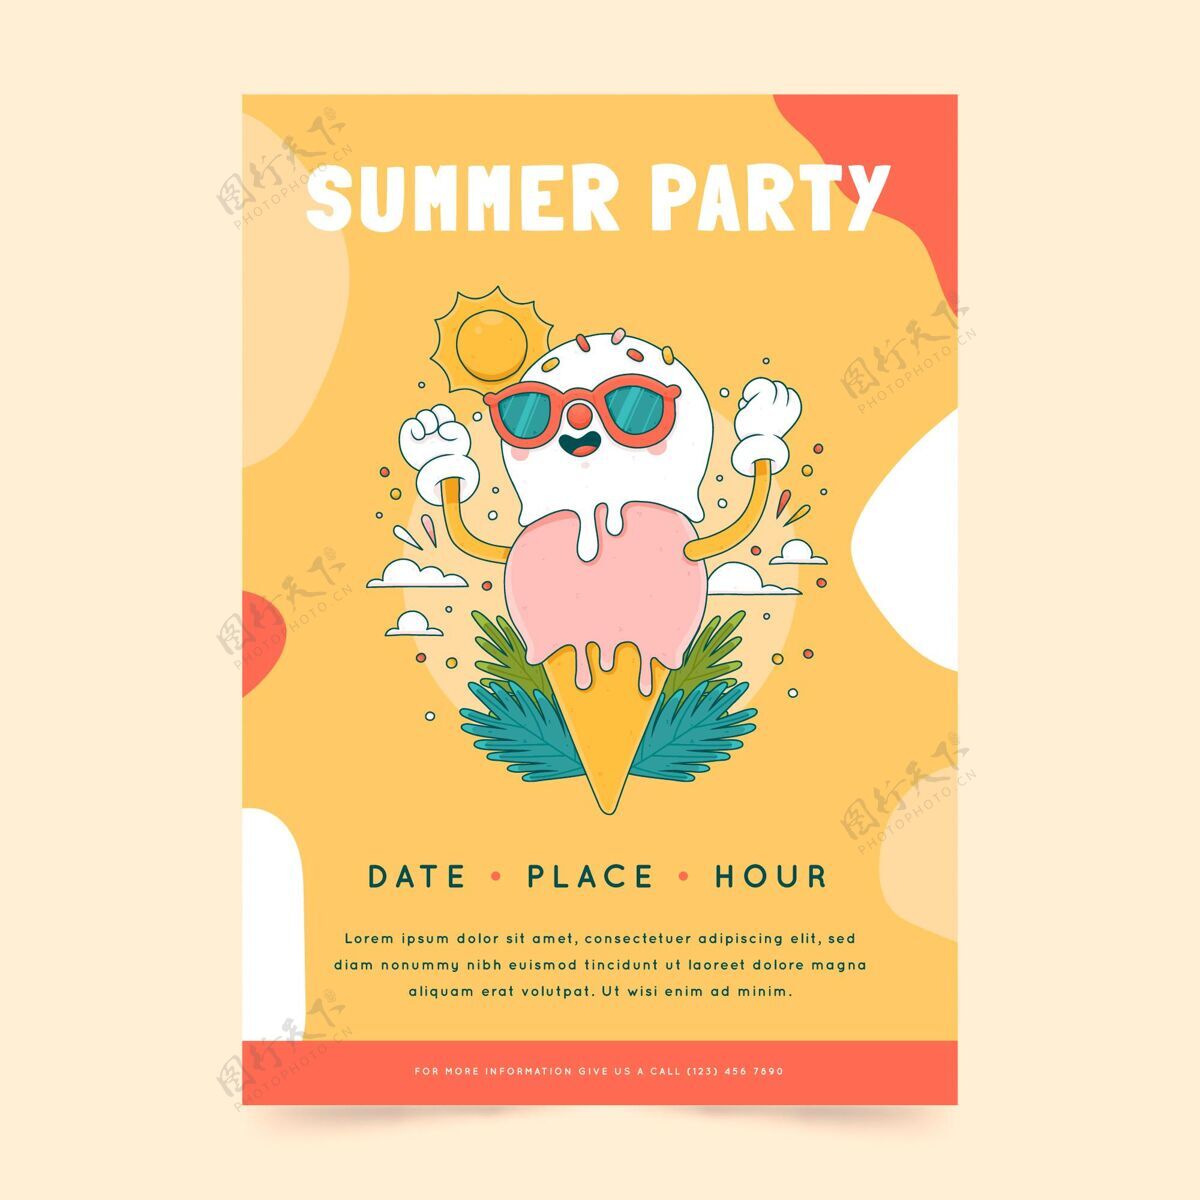 夏天手绘夏季派对垂直海报模板手绘夏天聚会海报模板